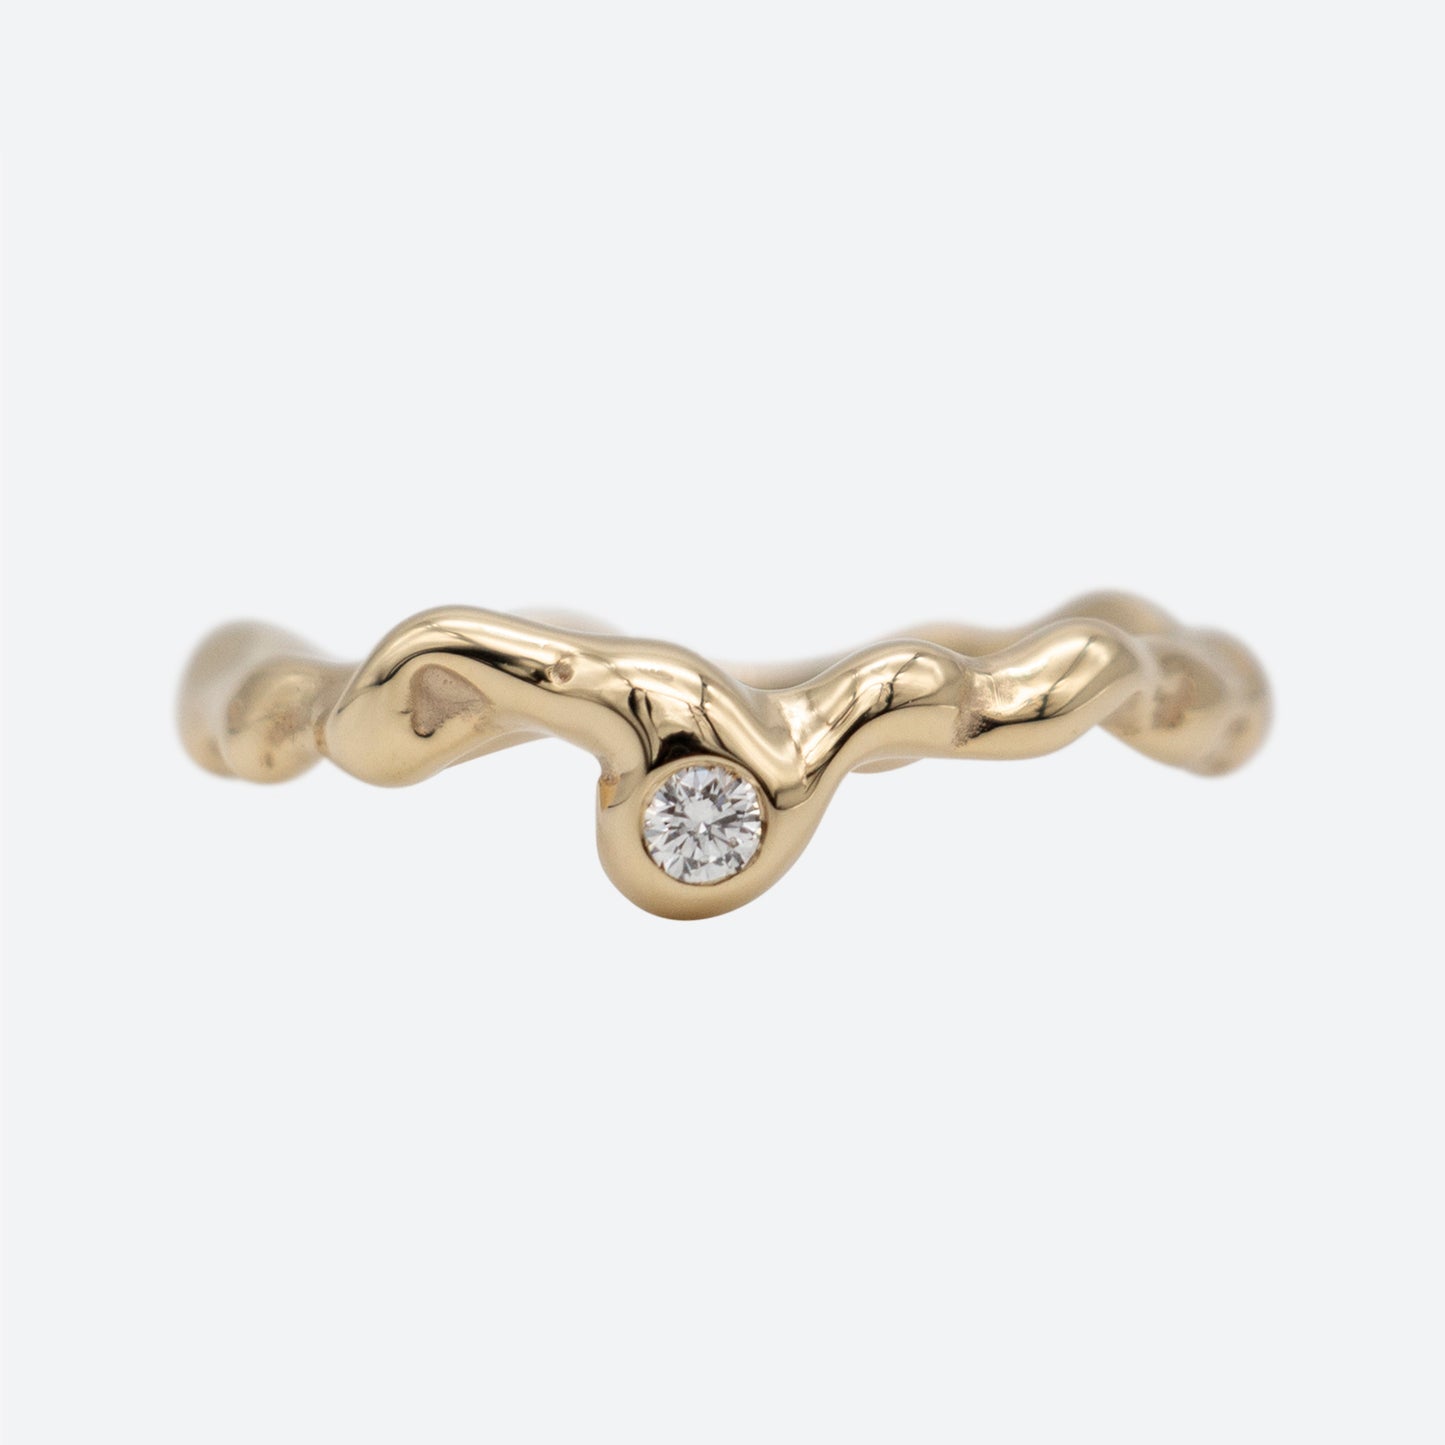 Organisk design ring i guld med en diamant på hvid baggrund. Design af Michell Liljefelt